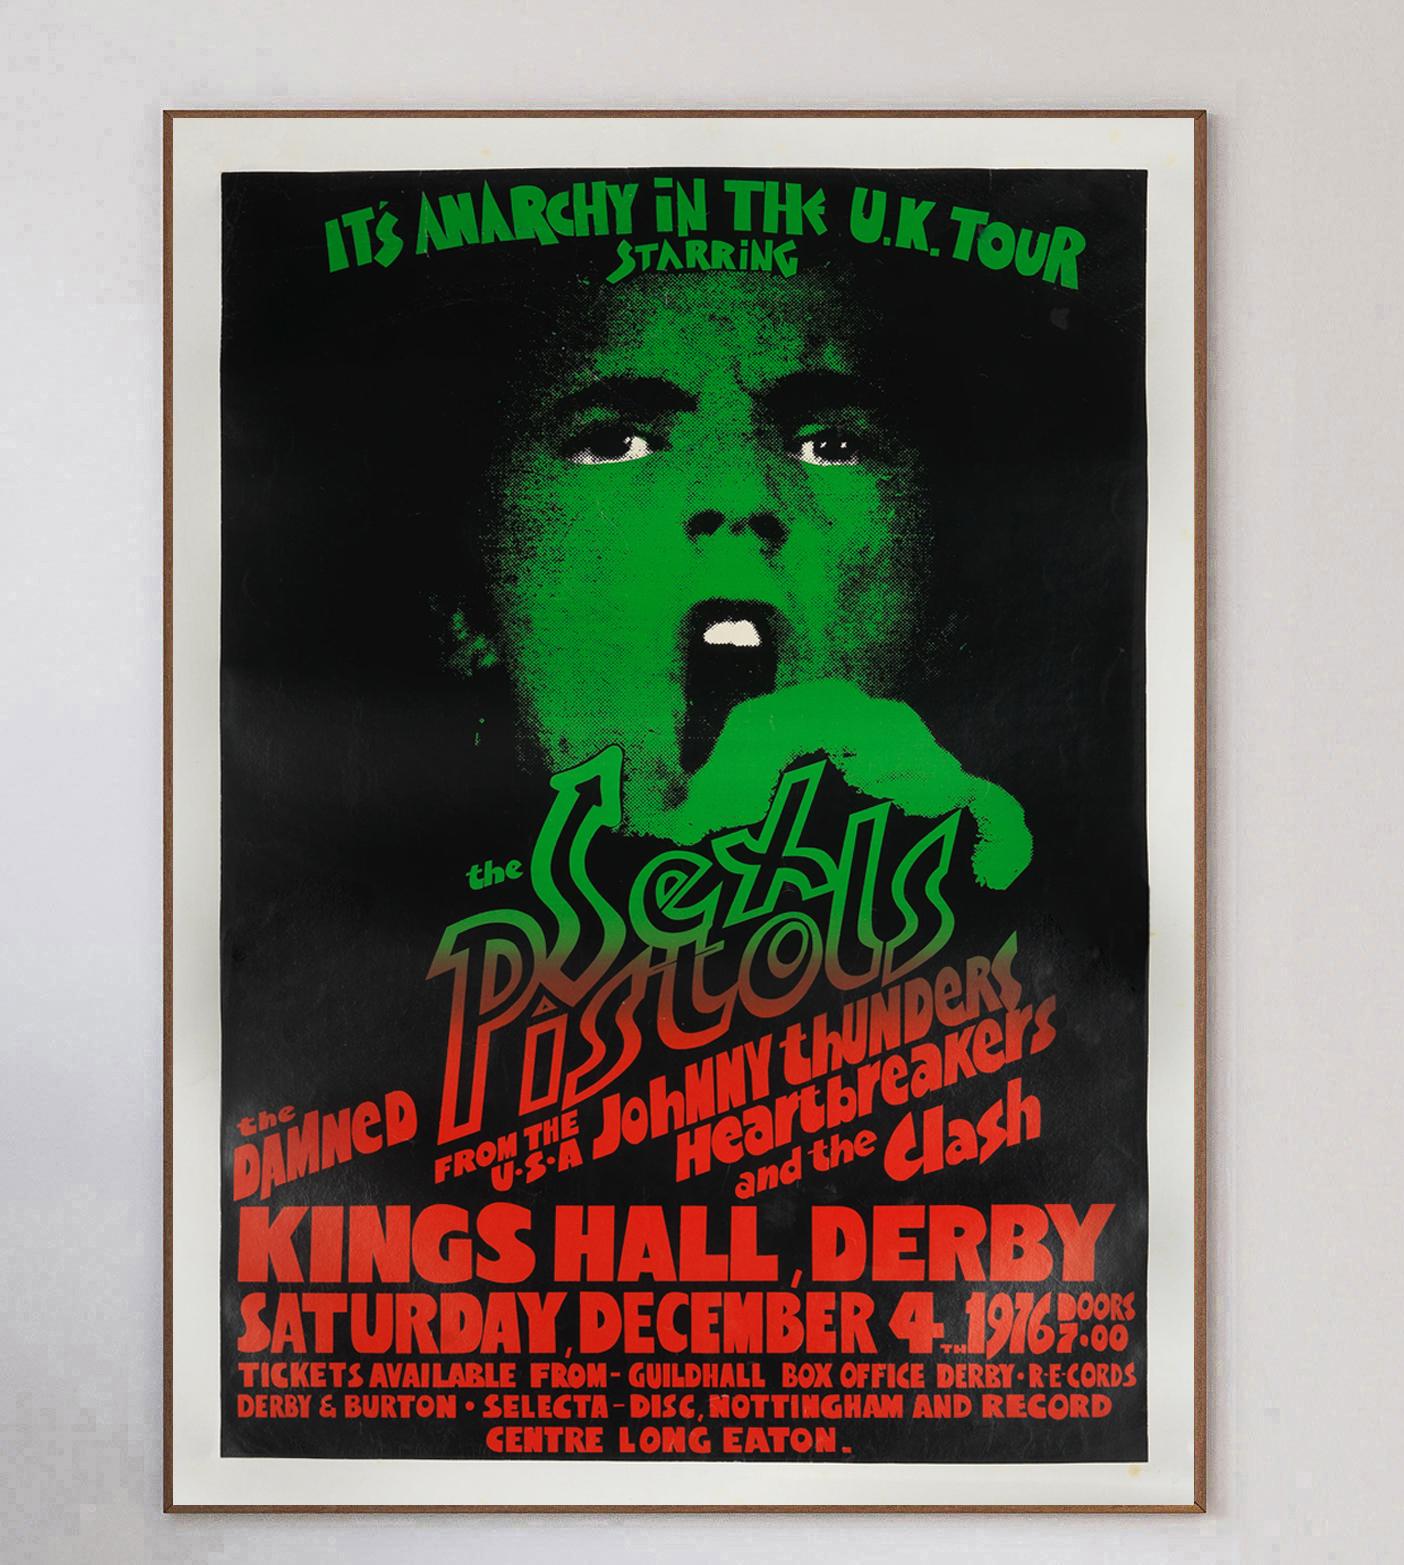 Affiche rare et fantastique pour le concert de la tournée britannique de 1976 des Sex Pistols 